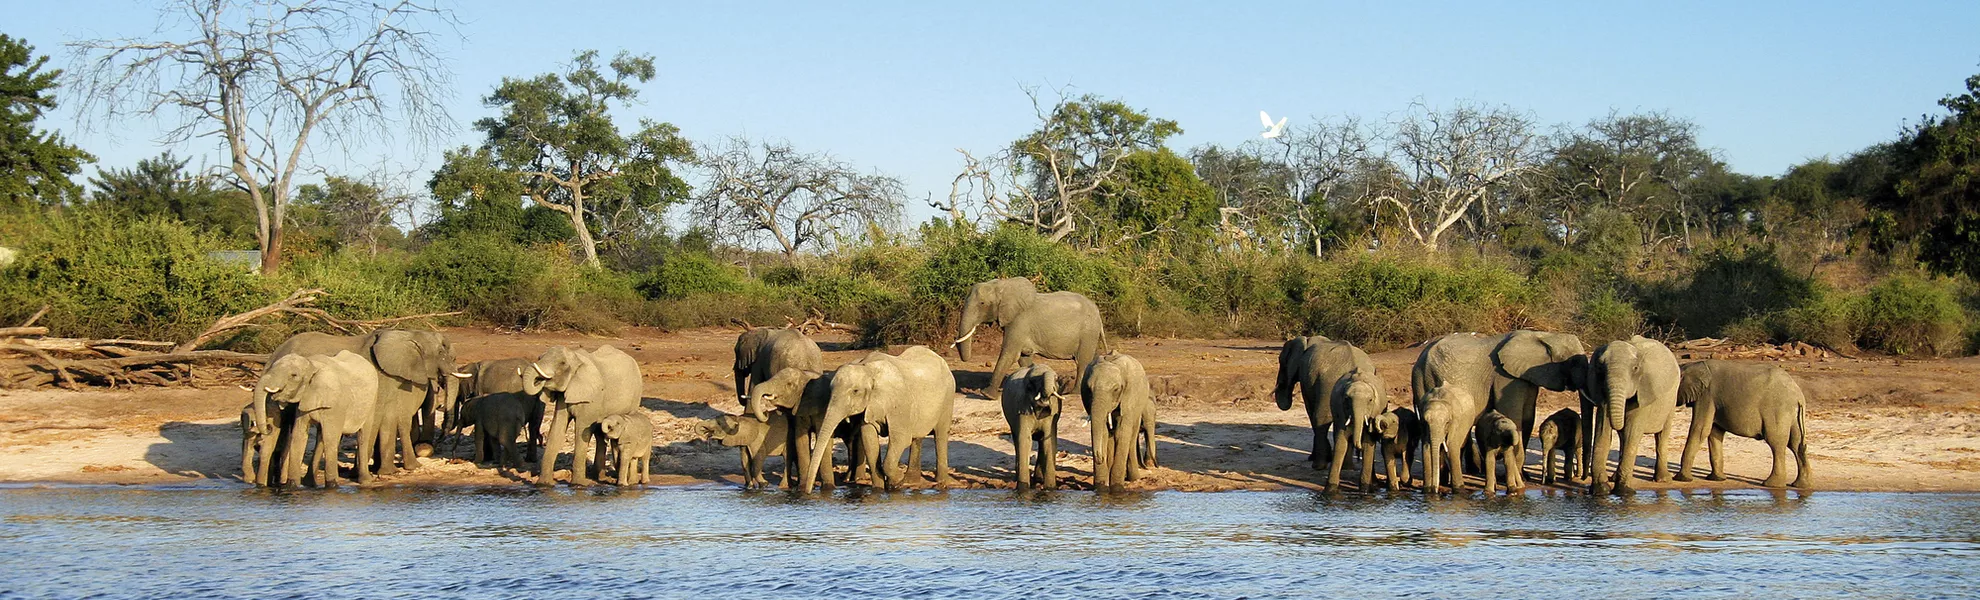 Elephant herd - © 2630ben - Fotolia